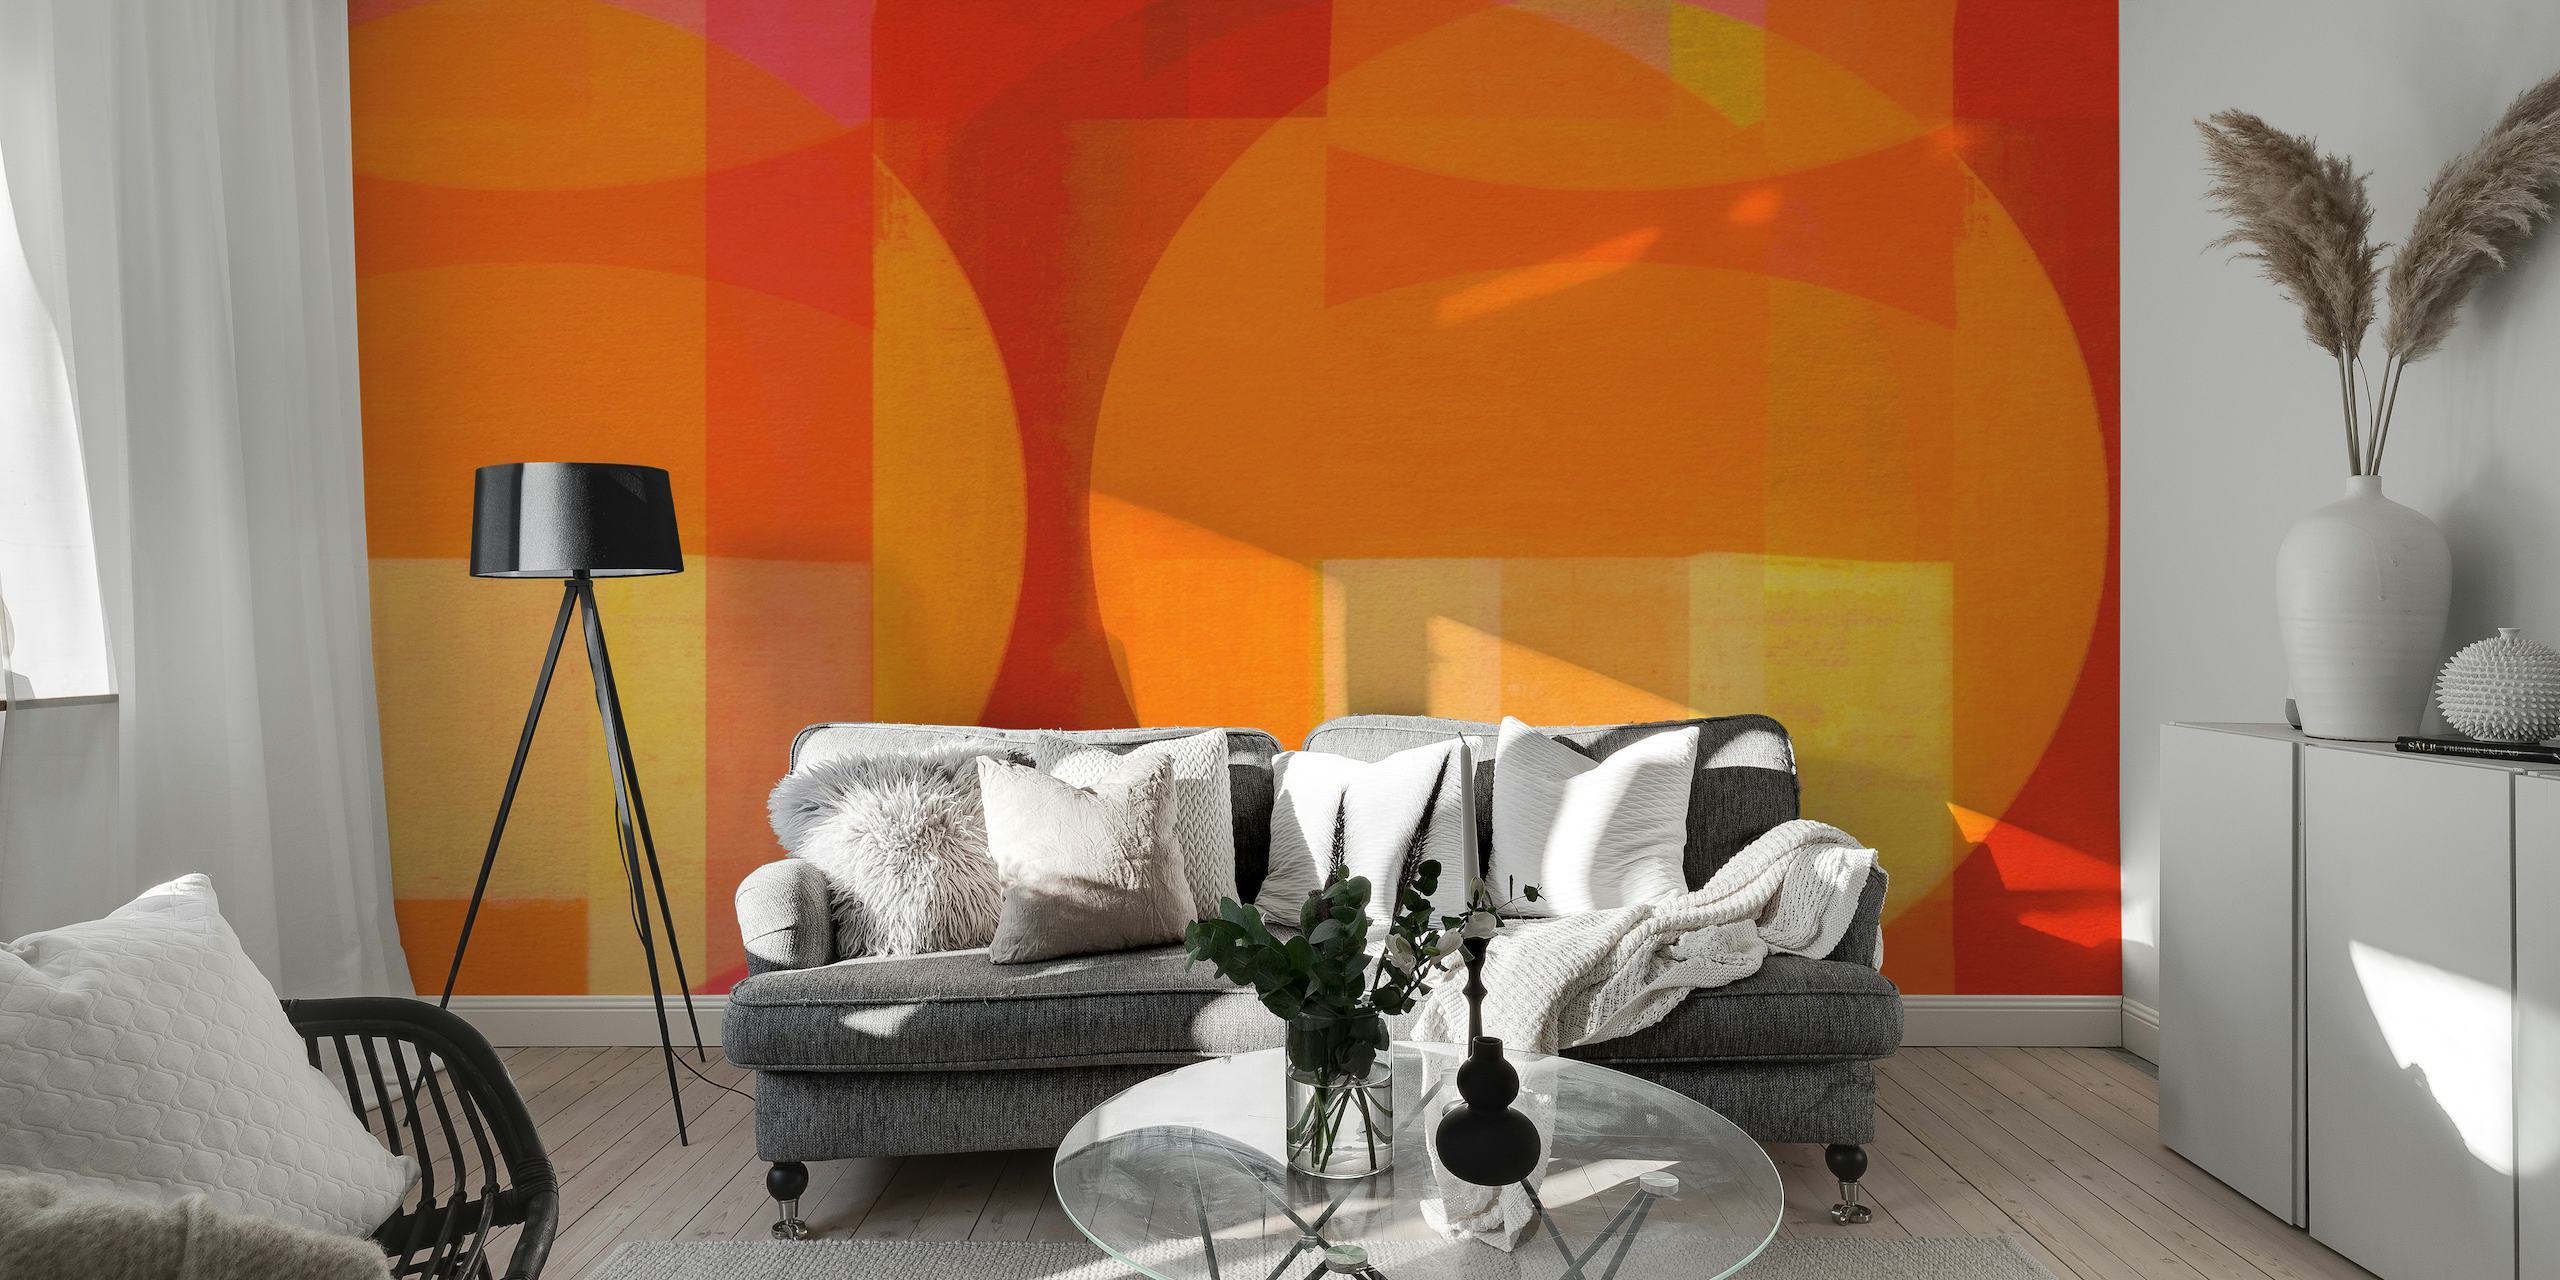 Peinture murale abstraite de style Bauhaus dans un mélange vibrant de formes géométriques rouges, orange et jaunes.